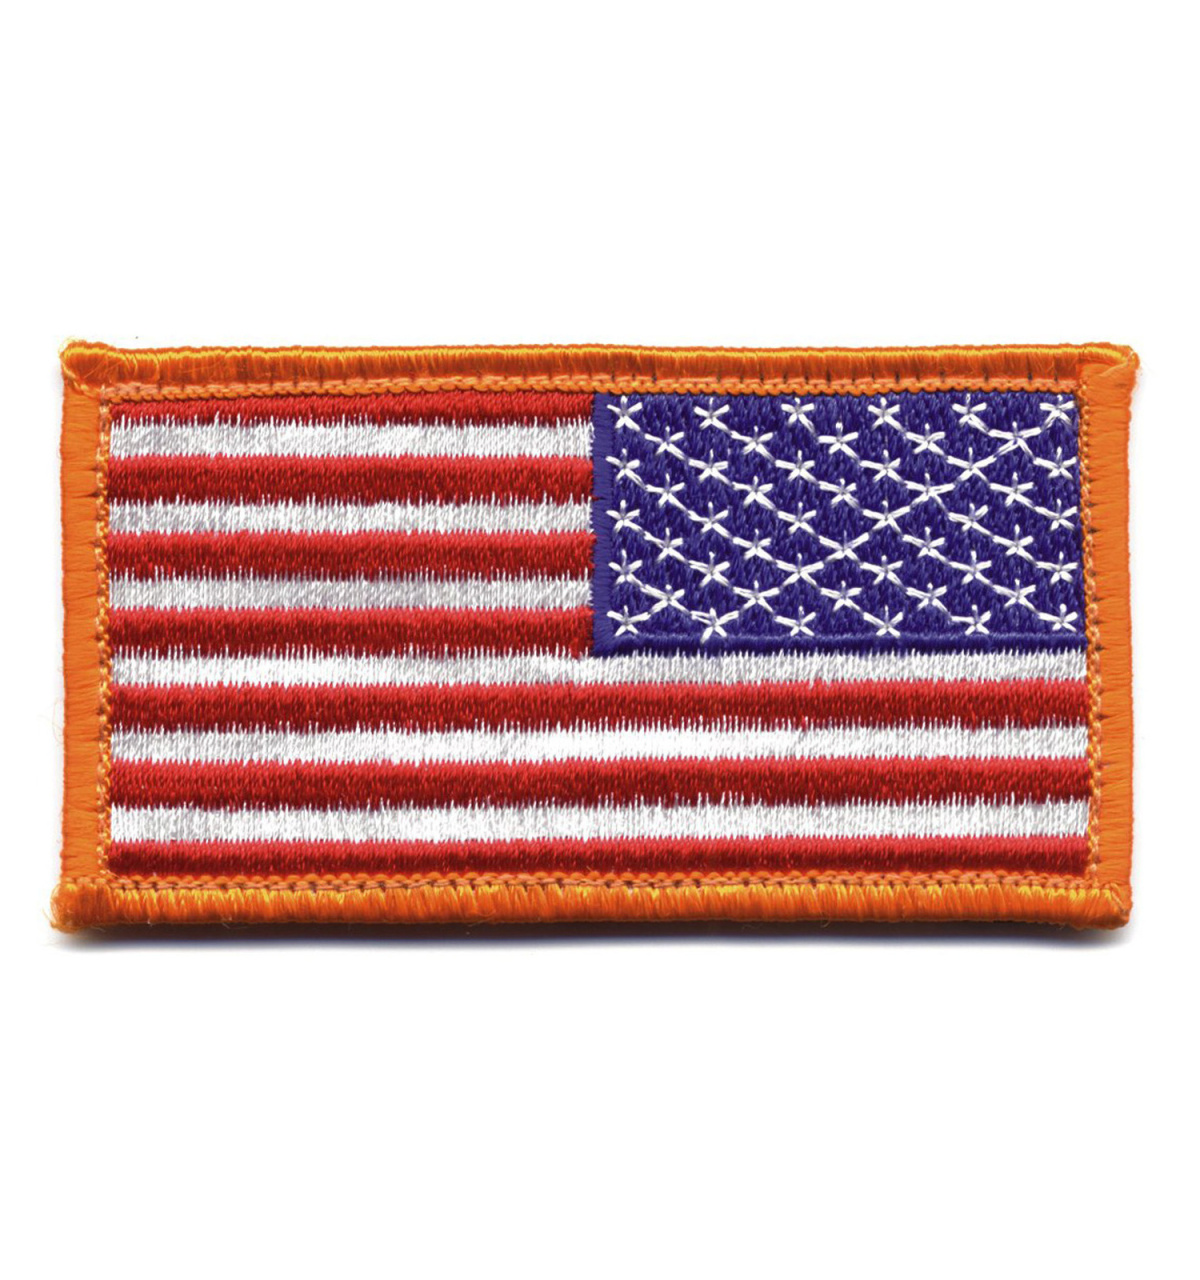 nášivka US vlajka reverzní 4,5x8,5 cm oranžový okraj